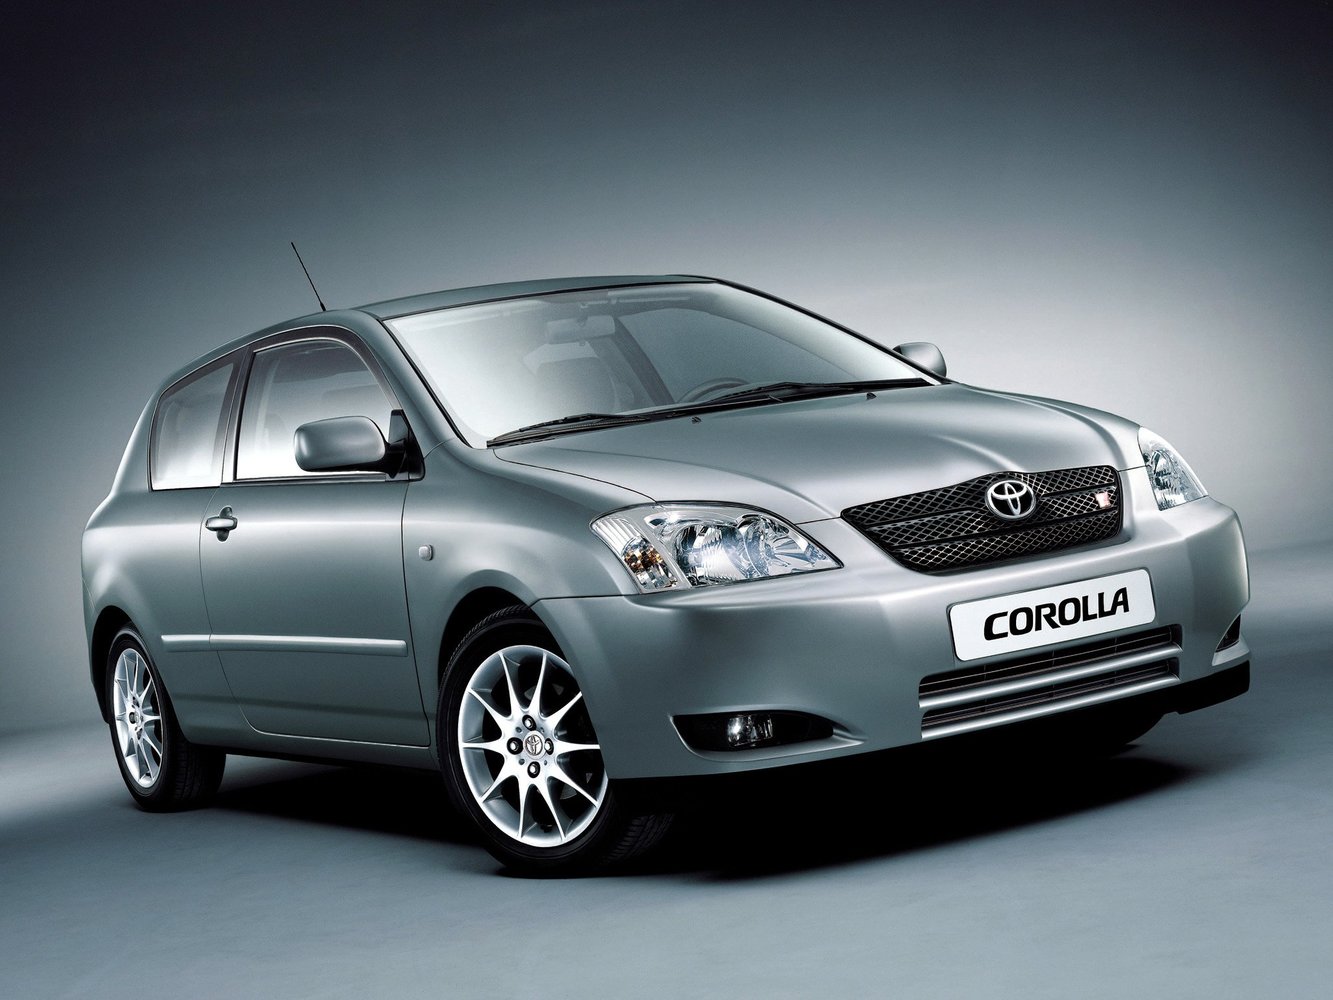 хэтчбек 3 дв. Toyota Corolla 2001 - 2004г выпуска модификация 1.4 MT (97 л.с.)